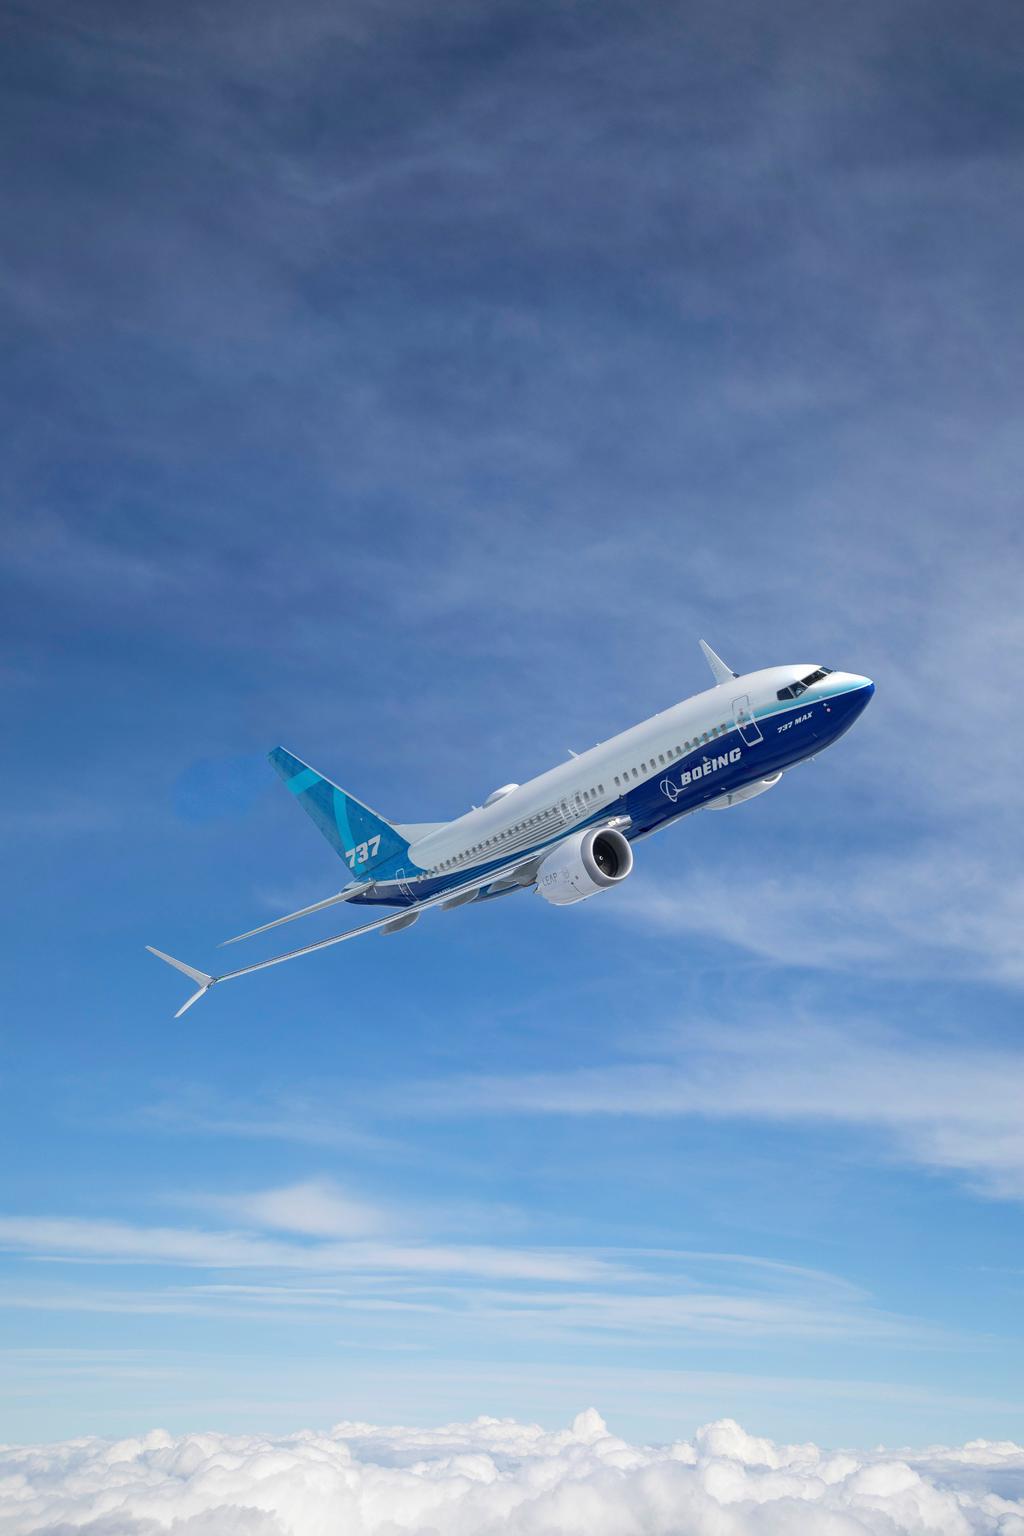 Boeing en crisis de credibilidad y futuro incierto